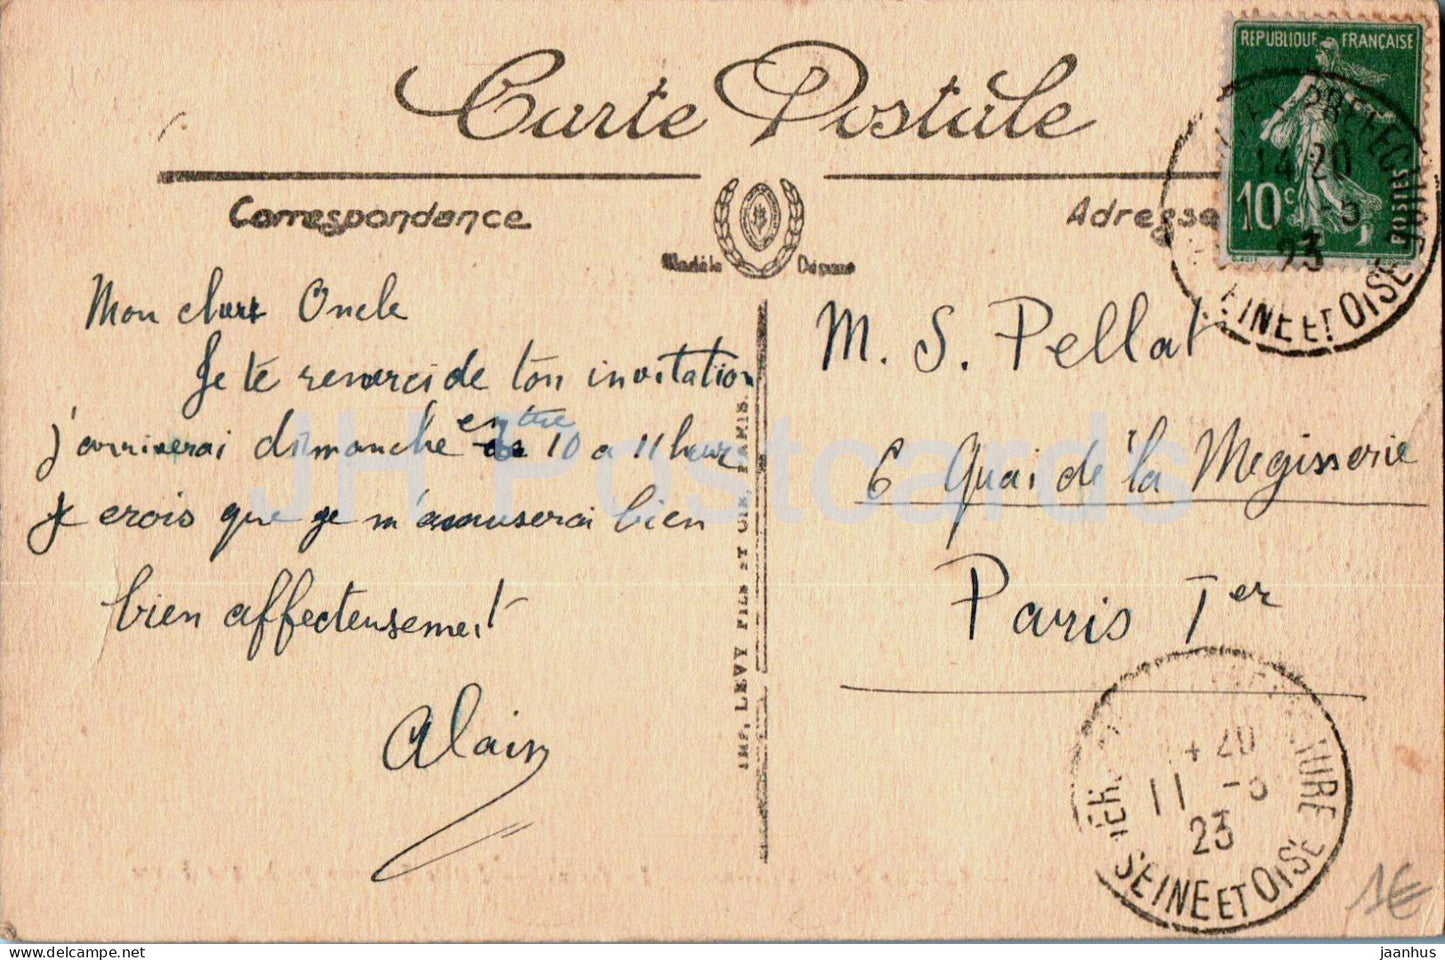 Versailles – Parc du Petit Trianon – La Ferme – Der Bauernhof – 273 – alte Postkarte – 1923 – Frankreich – gebraucht 